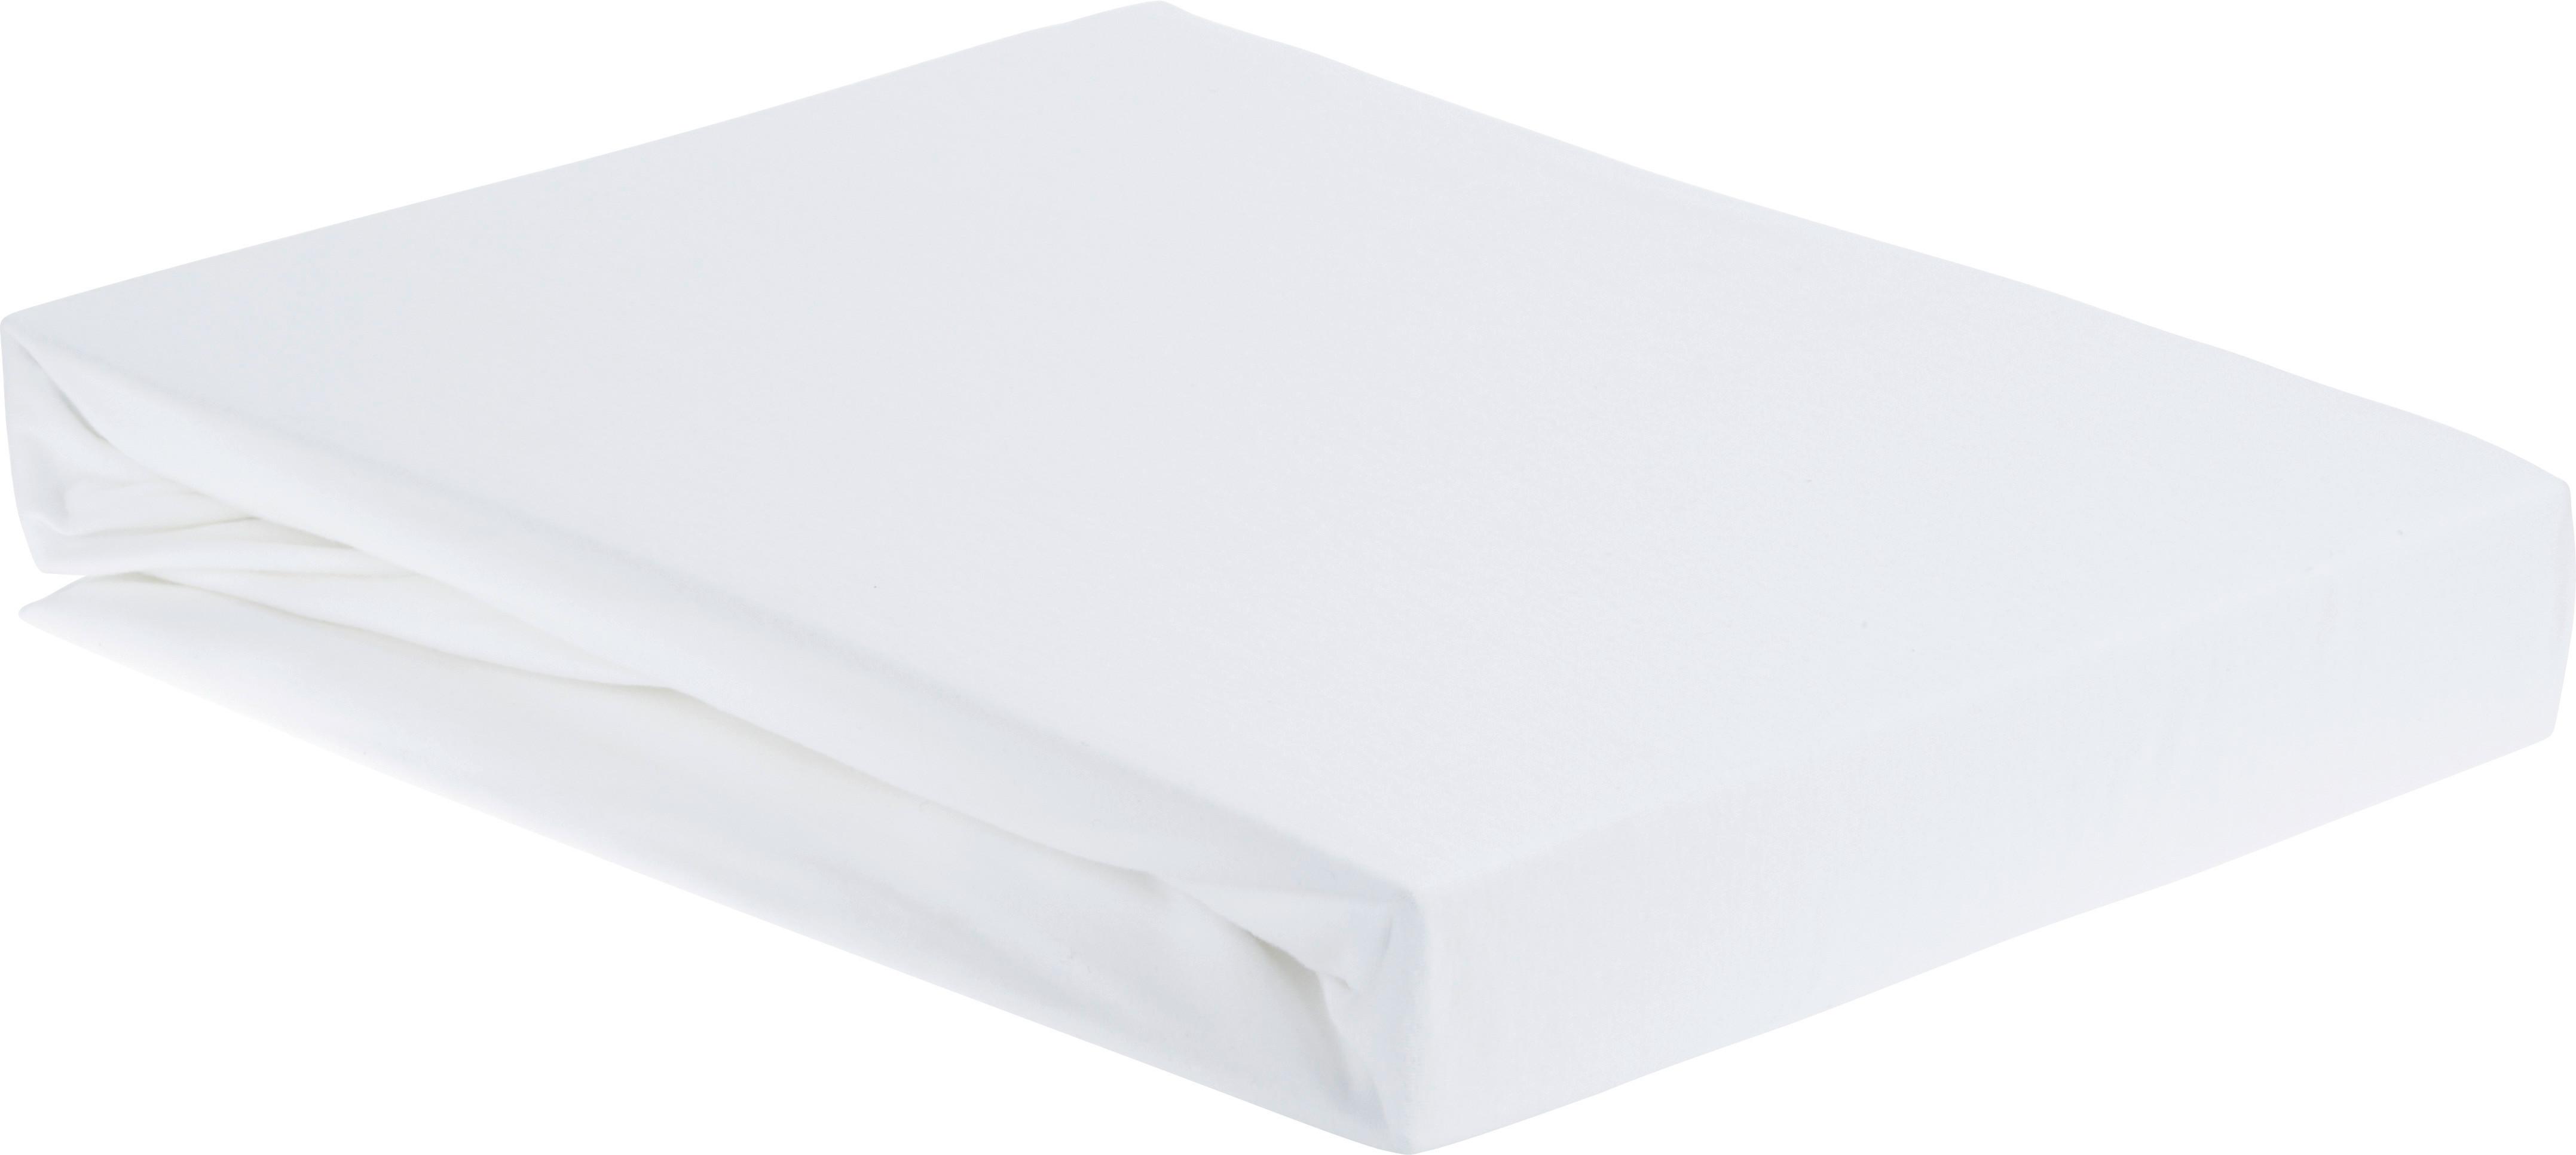 Elastické Prostěradlo Elasthan -Top- -Ext- - bílá, textil (180/200/28cm) - Premium Living